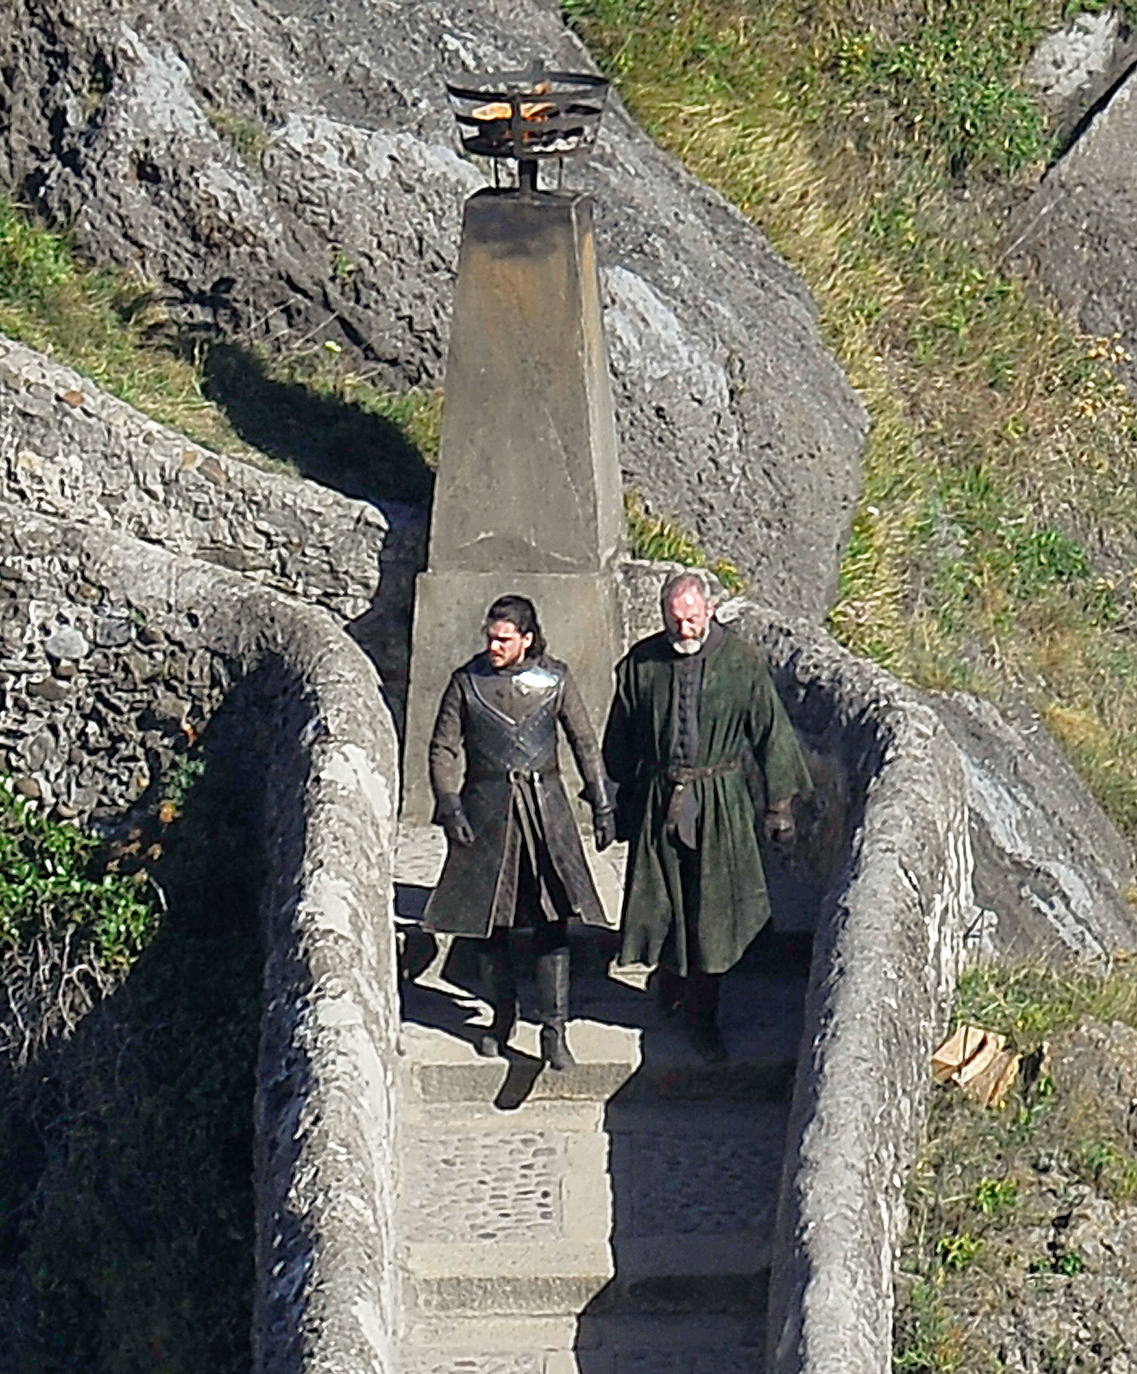 Jon Nieve (Kit Harington) y Ser Davos Seaworth (Liam Cunningham) bajan por la escalera de San Juan de Gaztelugatxe.